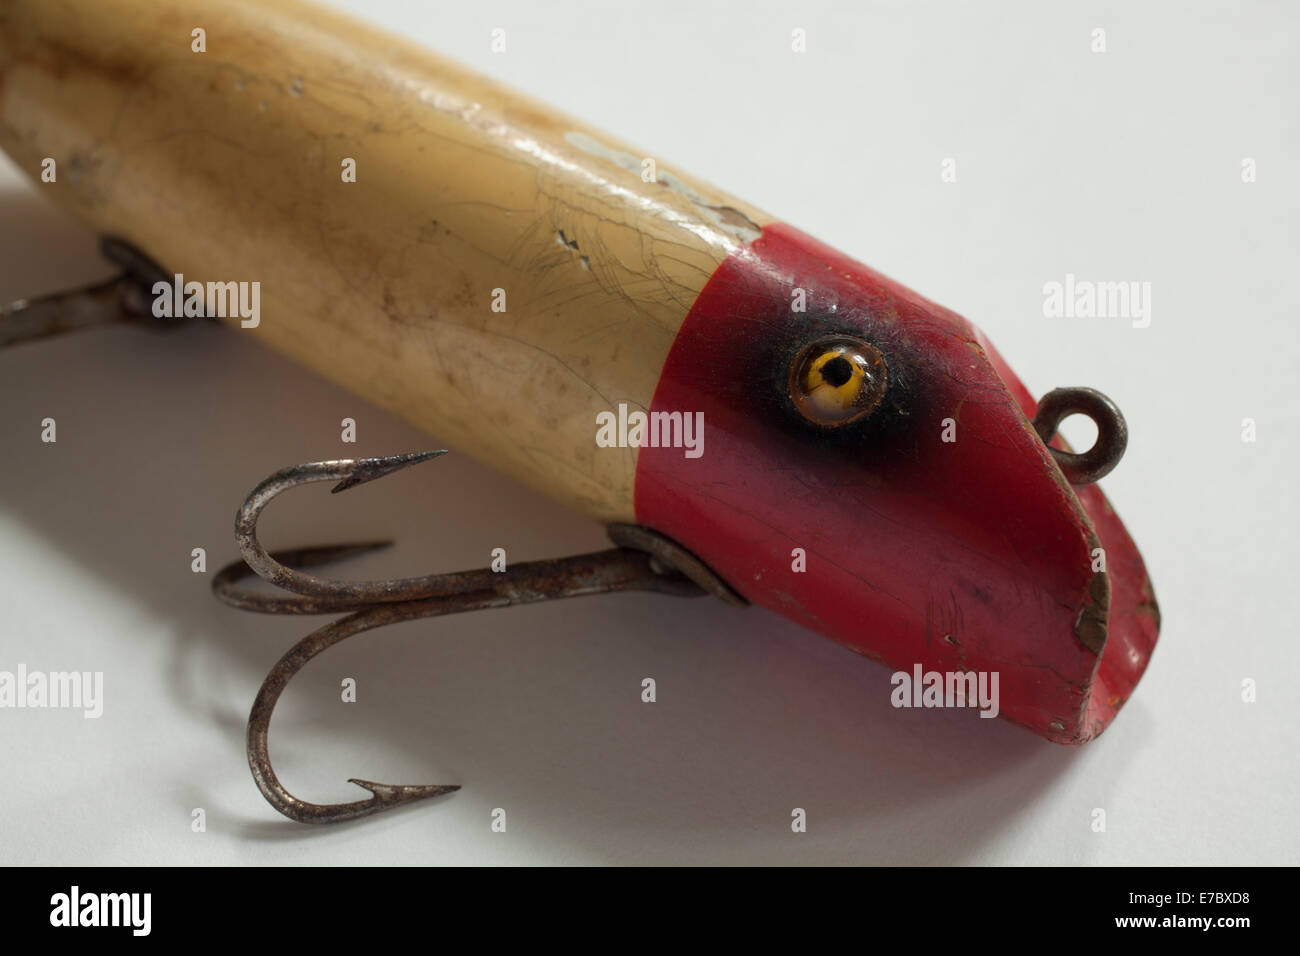 https://c8.alamy.com/comp/E7BXD8/vintage-fishing-lure-closeup-E7BXD8.jpg